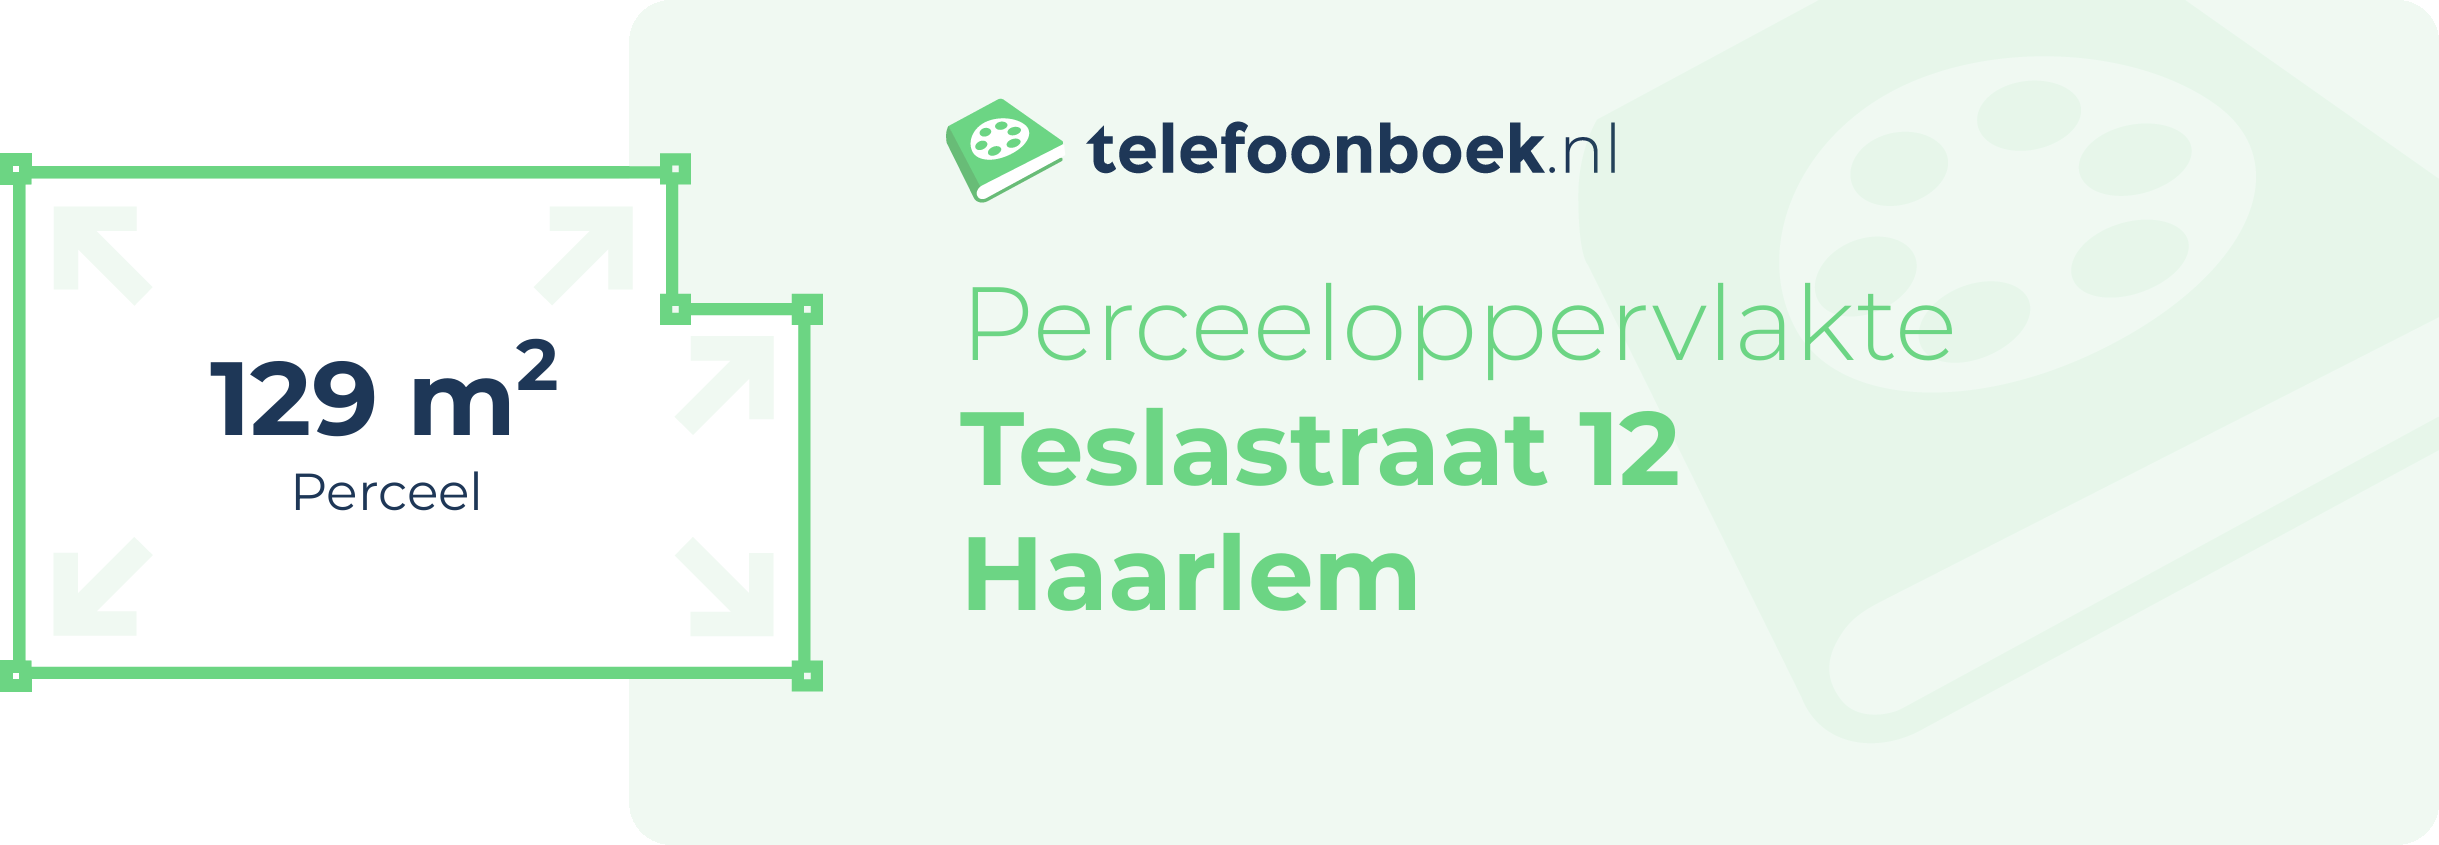 Perceeloppervlakte Teslastraat 12 Haarlem